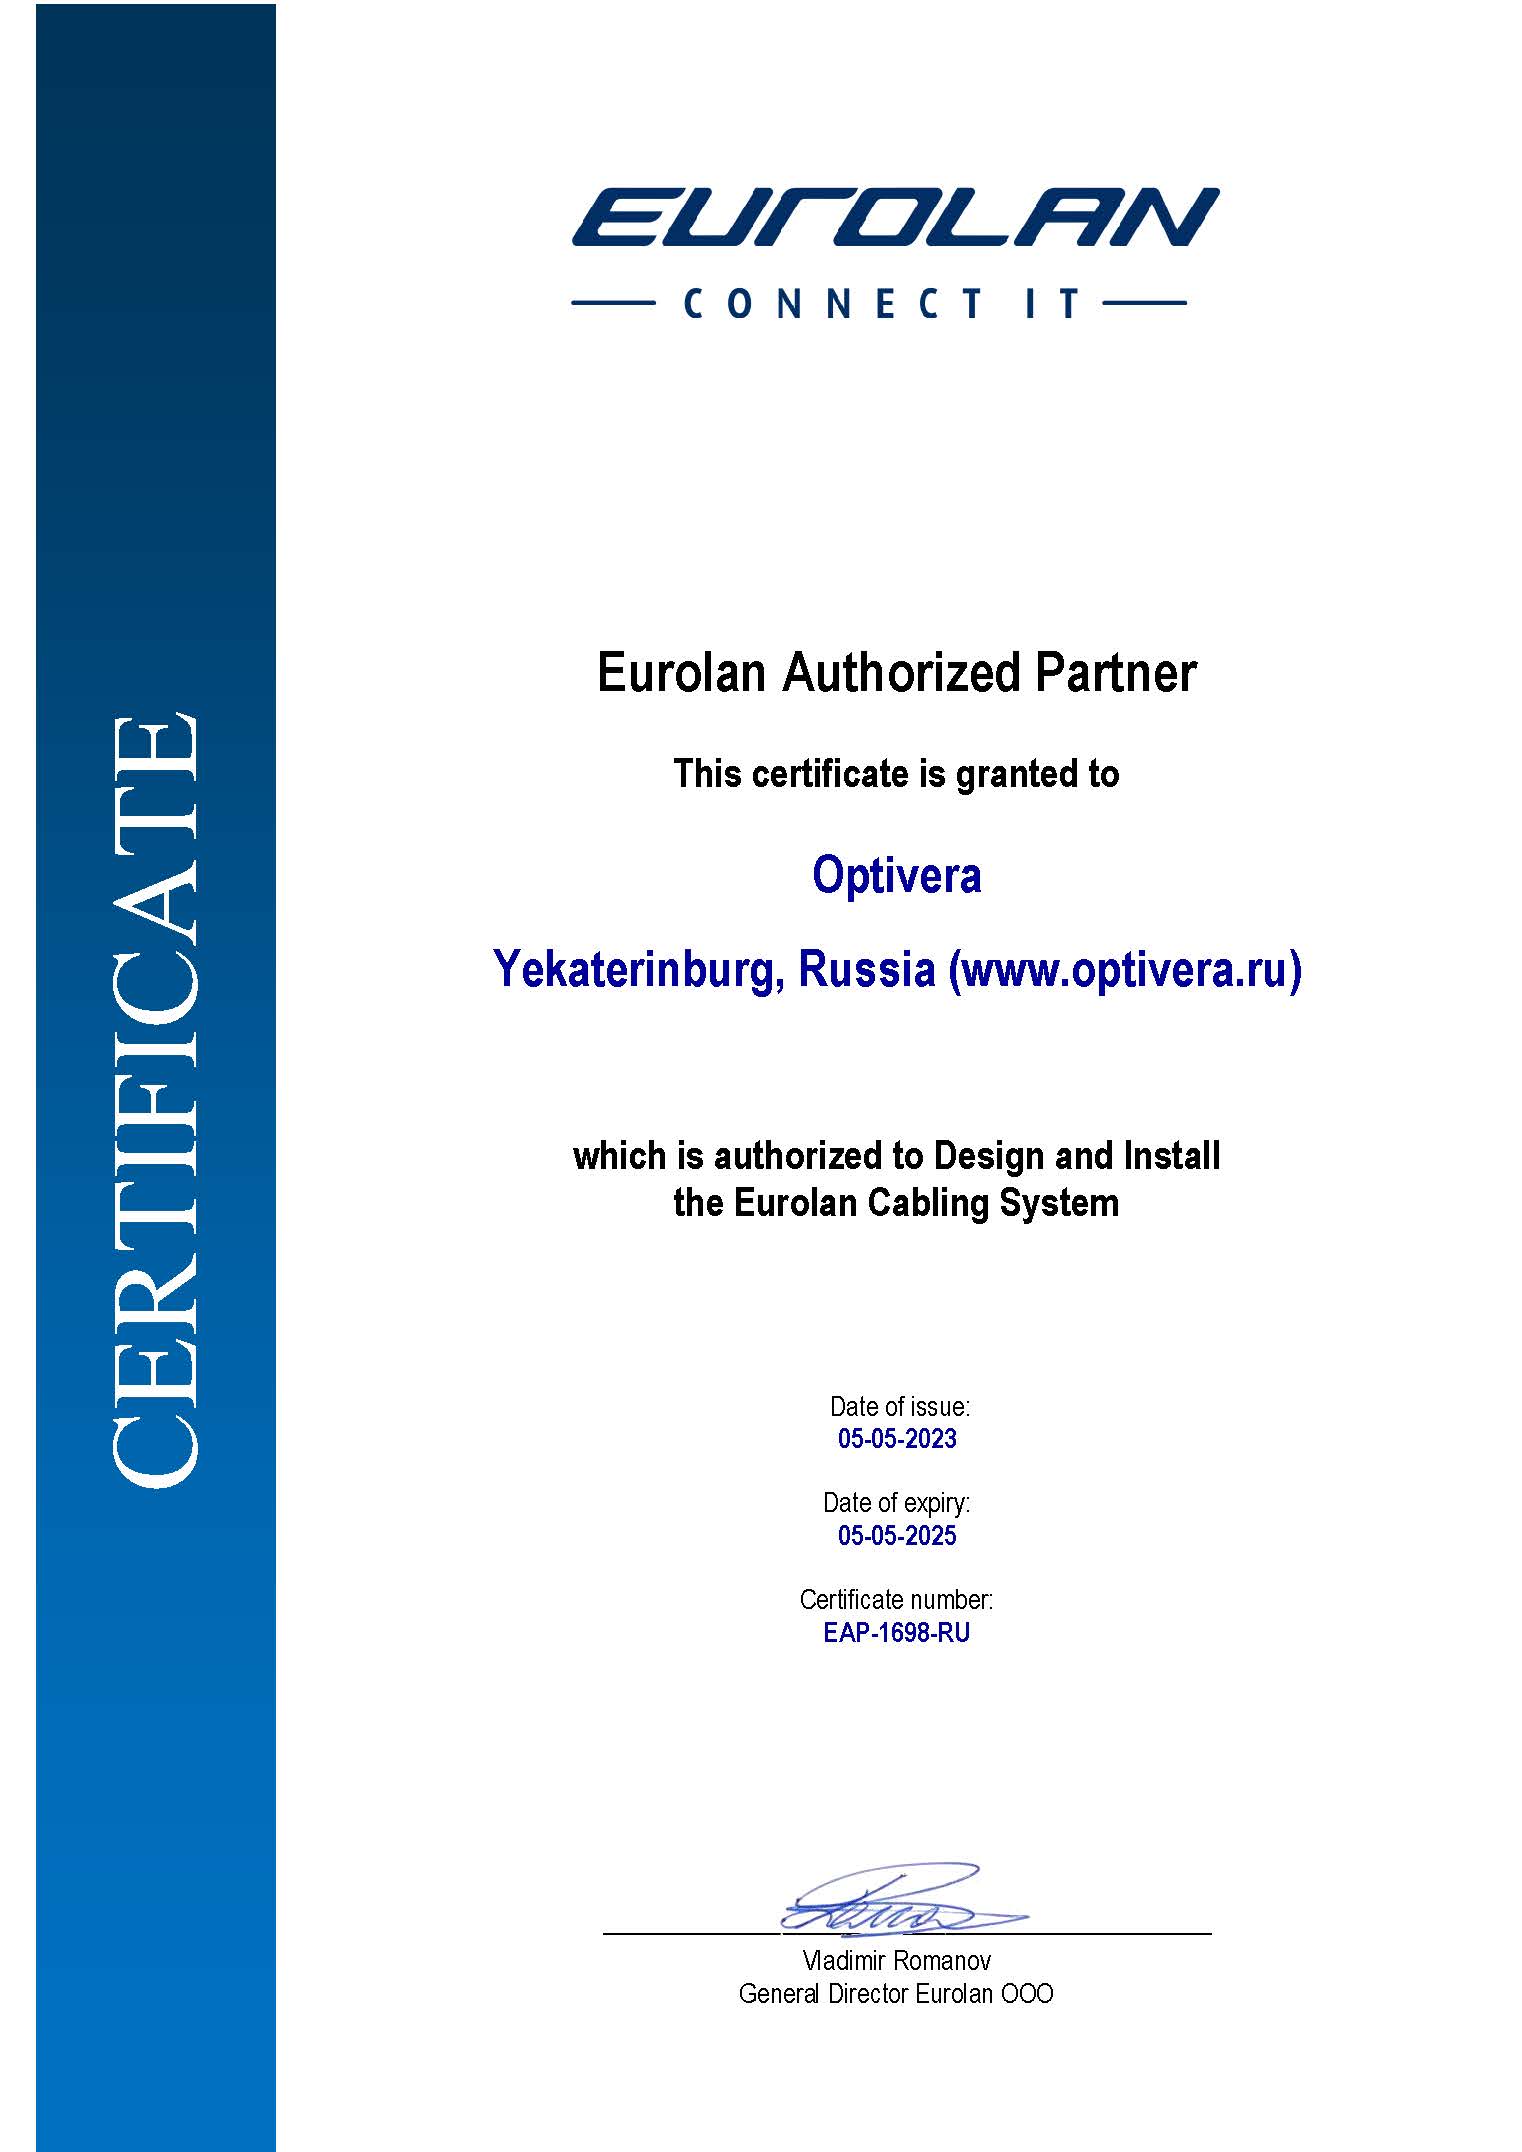 Оптивера продлила статус авторизованного партнера Eurolan